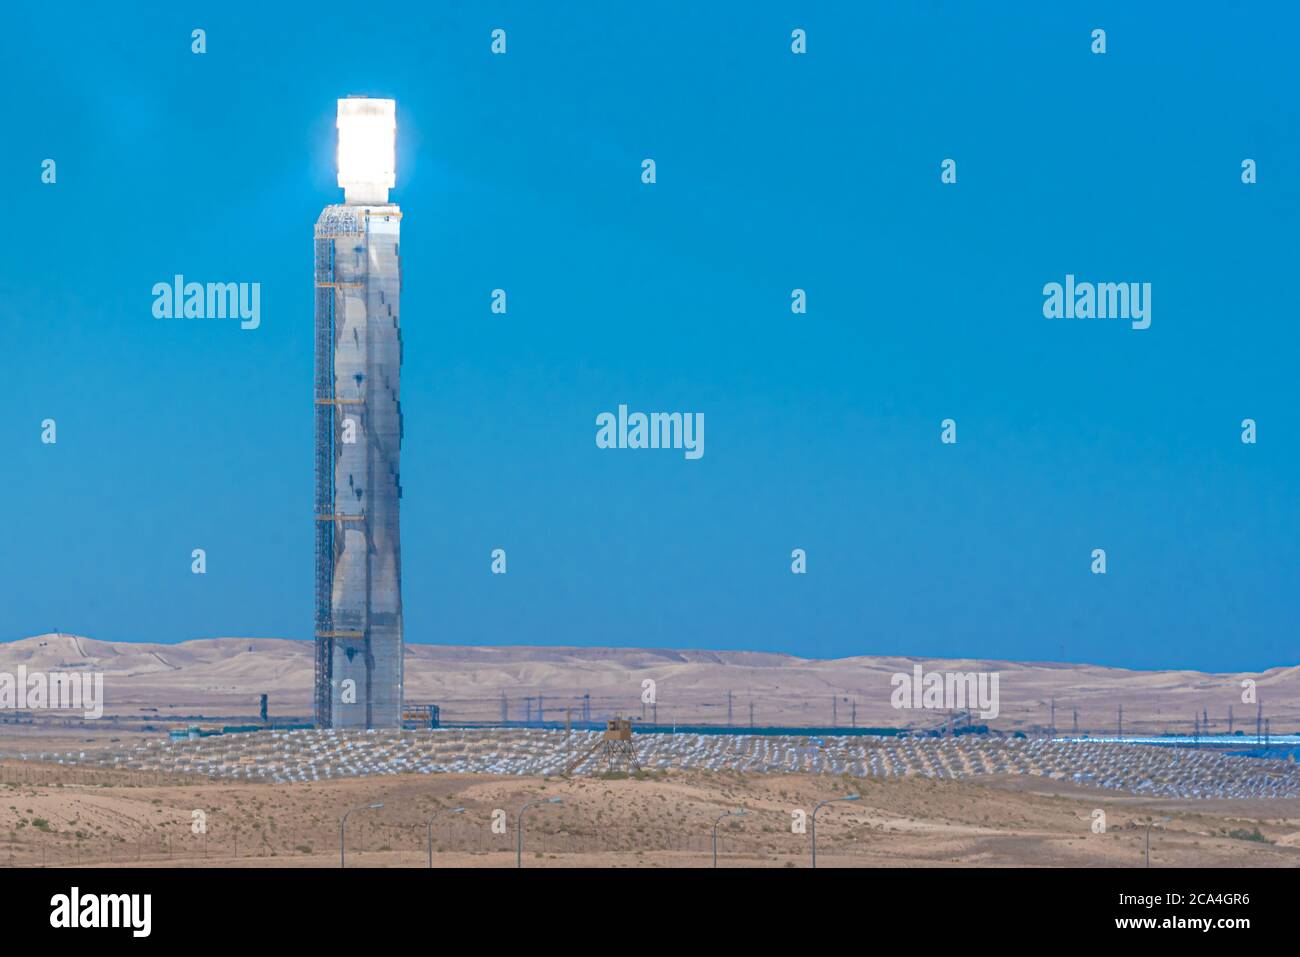 La stazione di raccolta presso la centrale solare Ashalim è una centrale solare termica nel deserto di Negev, vicino al kibbutz Ashalim, in Israele. Th Foto Stock